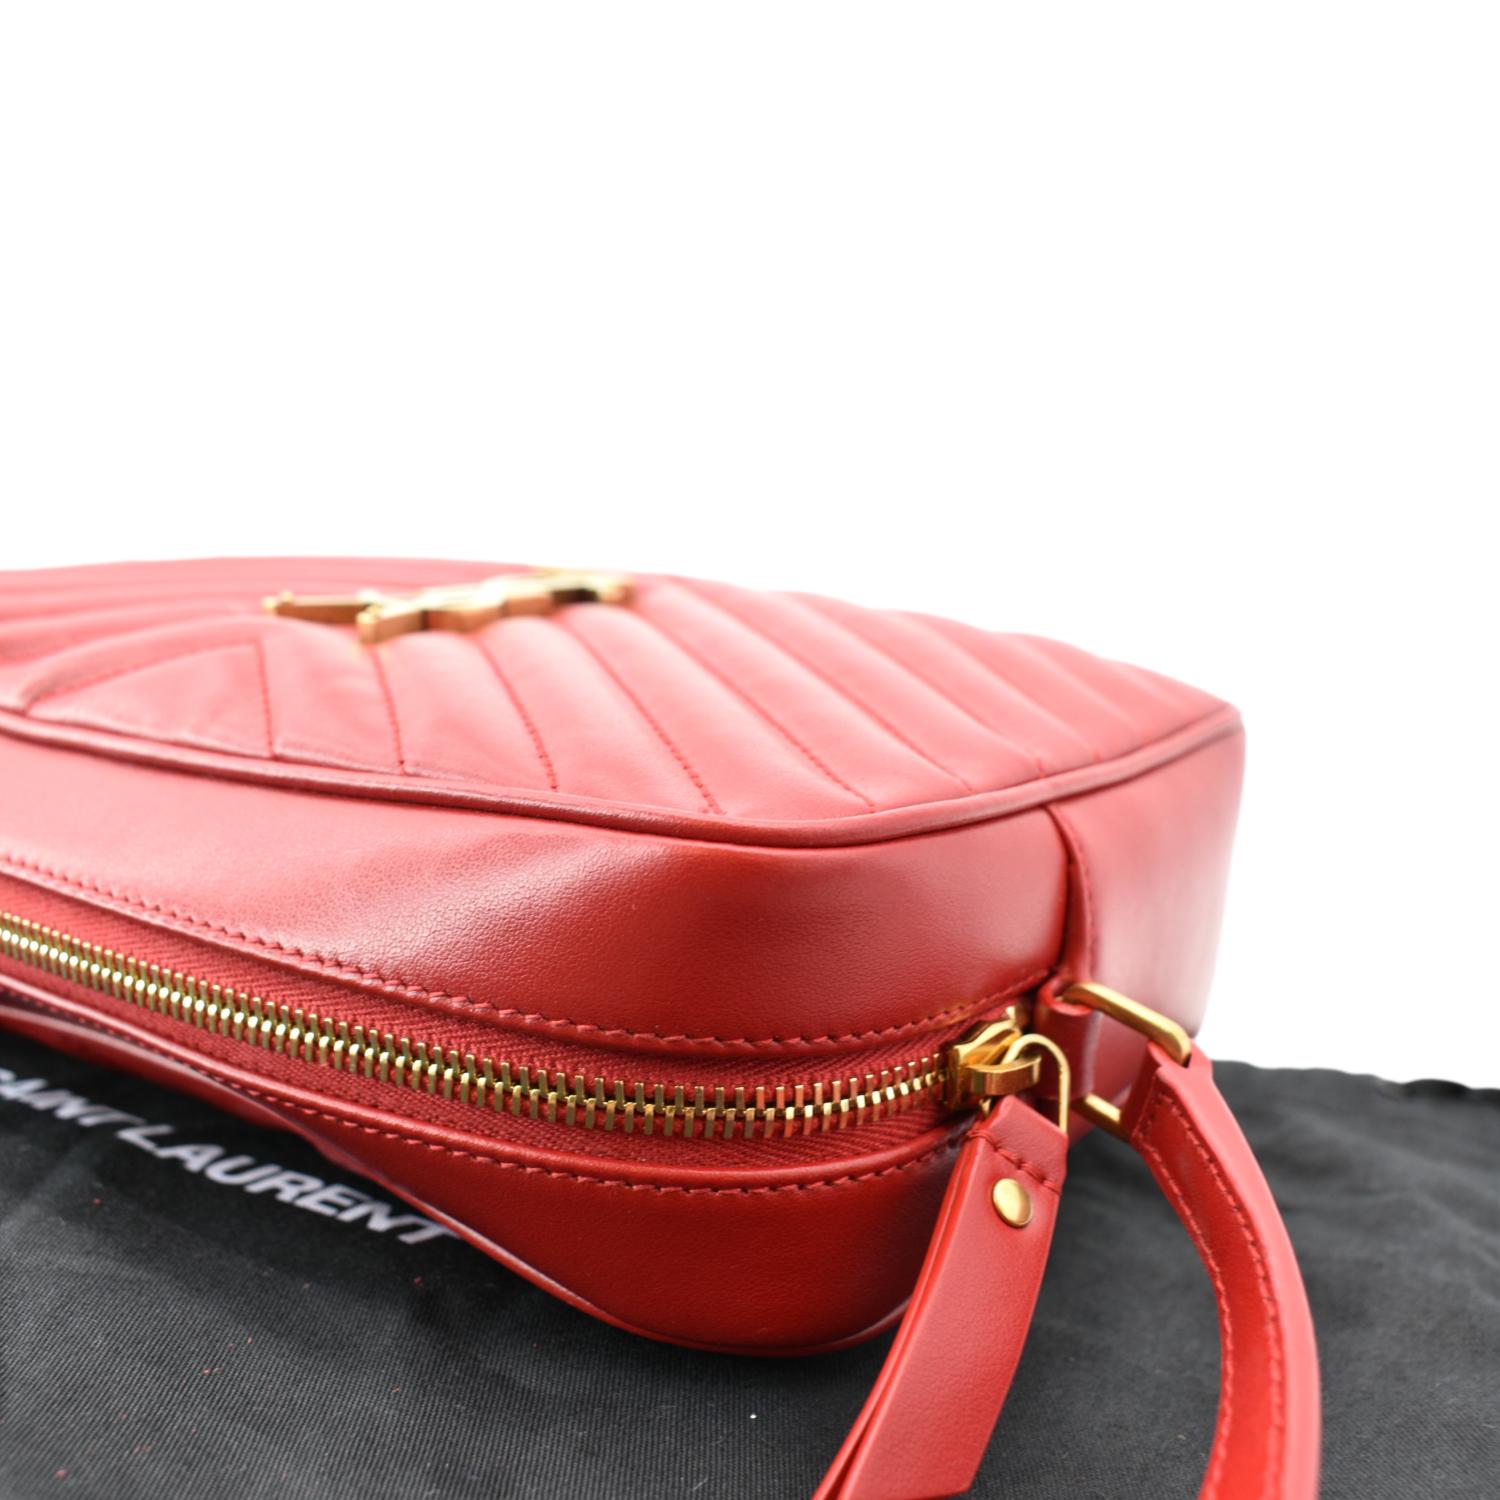 YSL Lou Camera Bag Review, Saint-Laurent Handbag